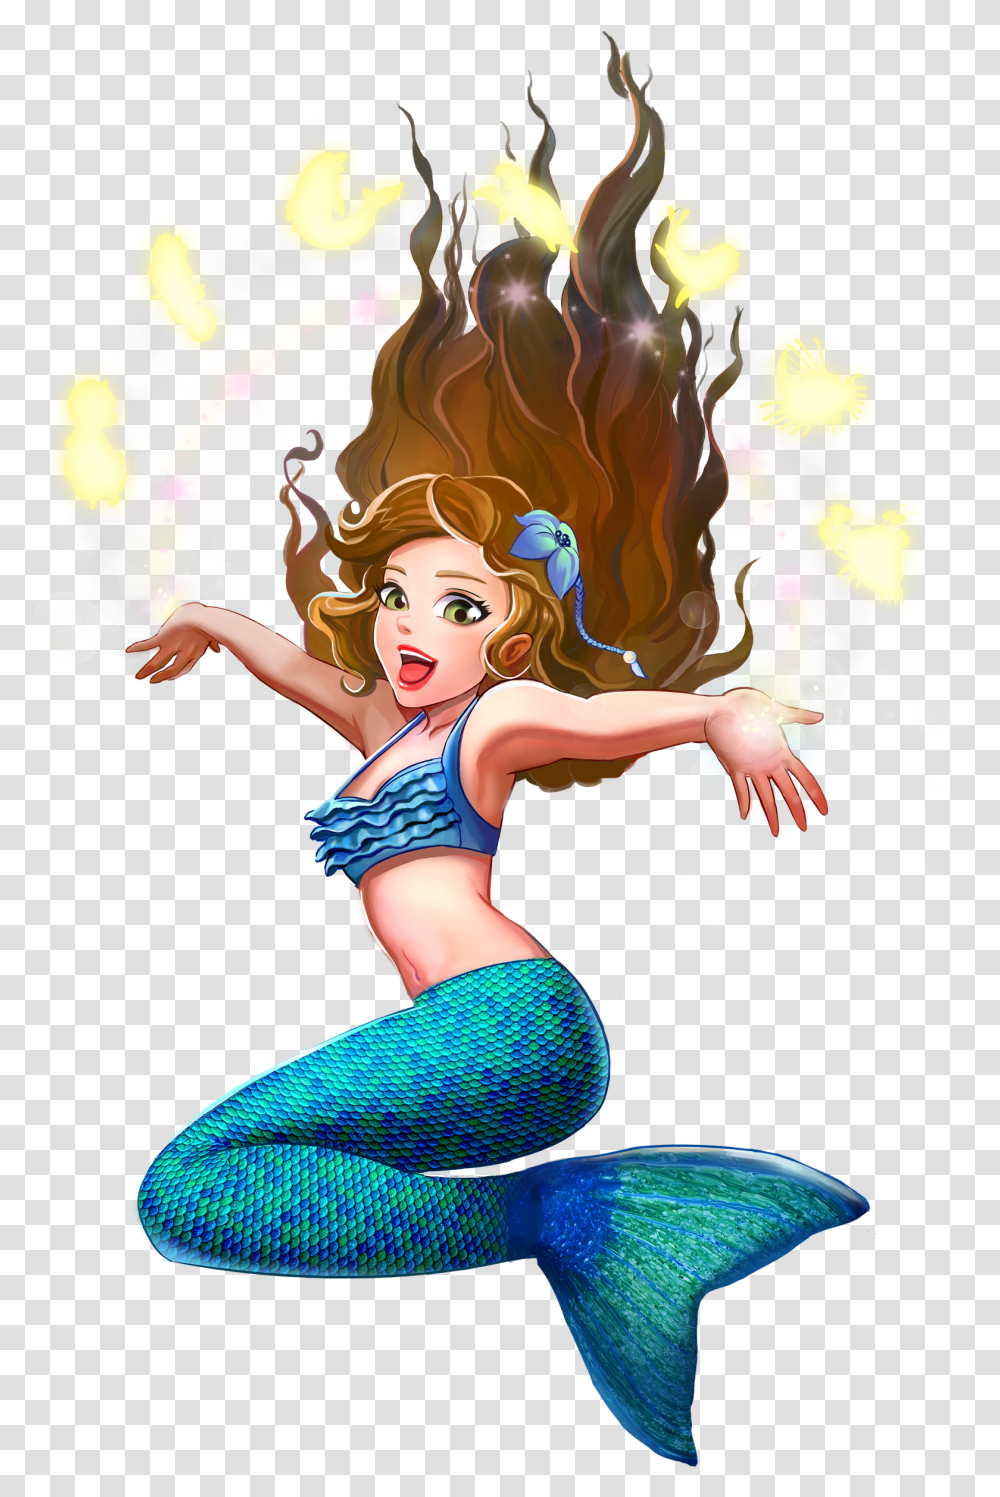 Mermaid Wiki Mermaid Dark Hair Green Eyes, Dance Pose, Leisure Activities Transparent Png